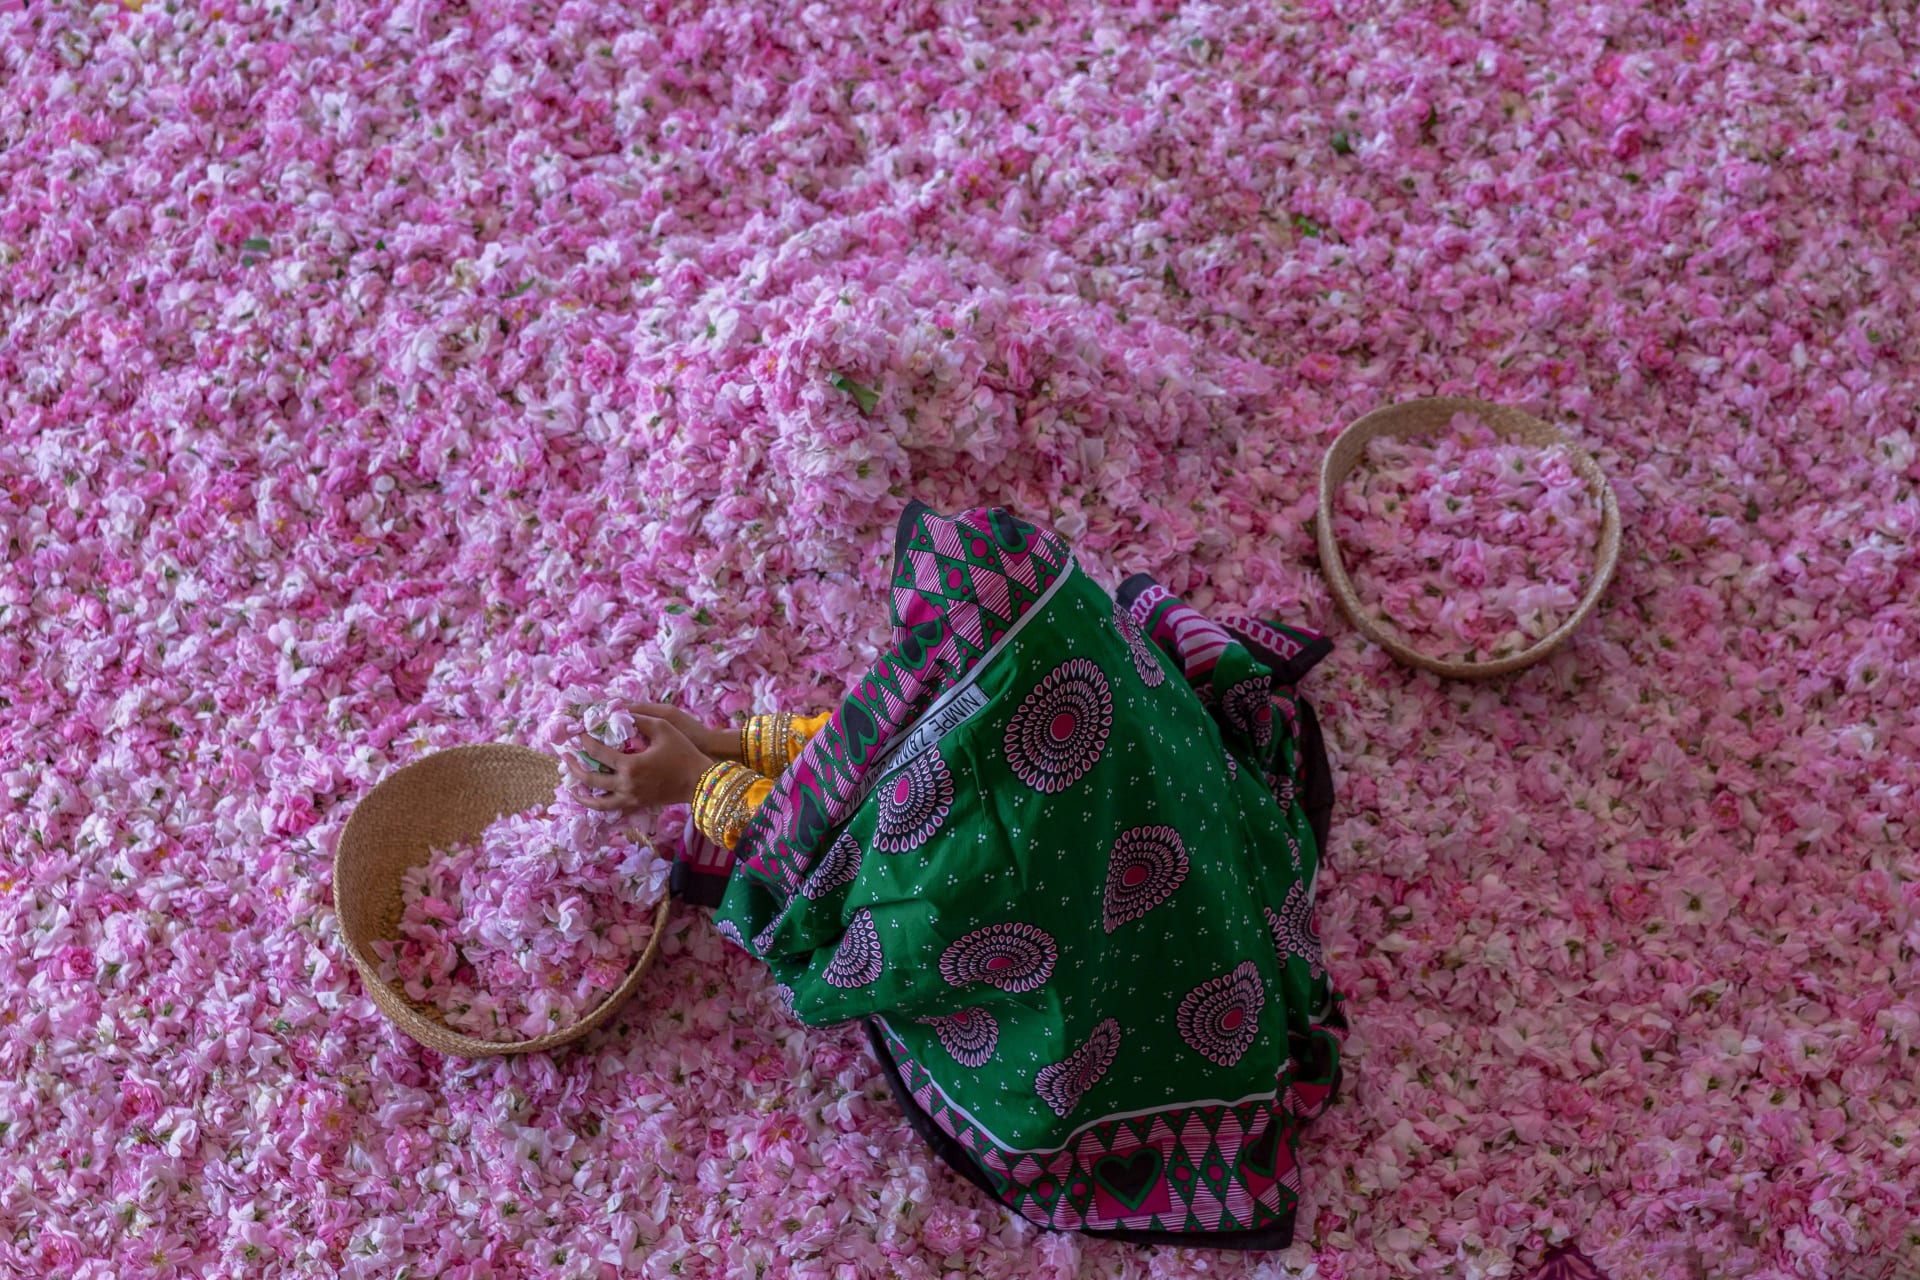 بِحار من اللون الوردي.. مصور يتجه للجبل الأخضر بسلطنة عمان لتوثيق موسم الورد وهذه هي المشاهد الحالمة التي وثقها